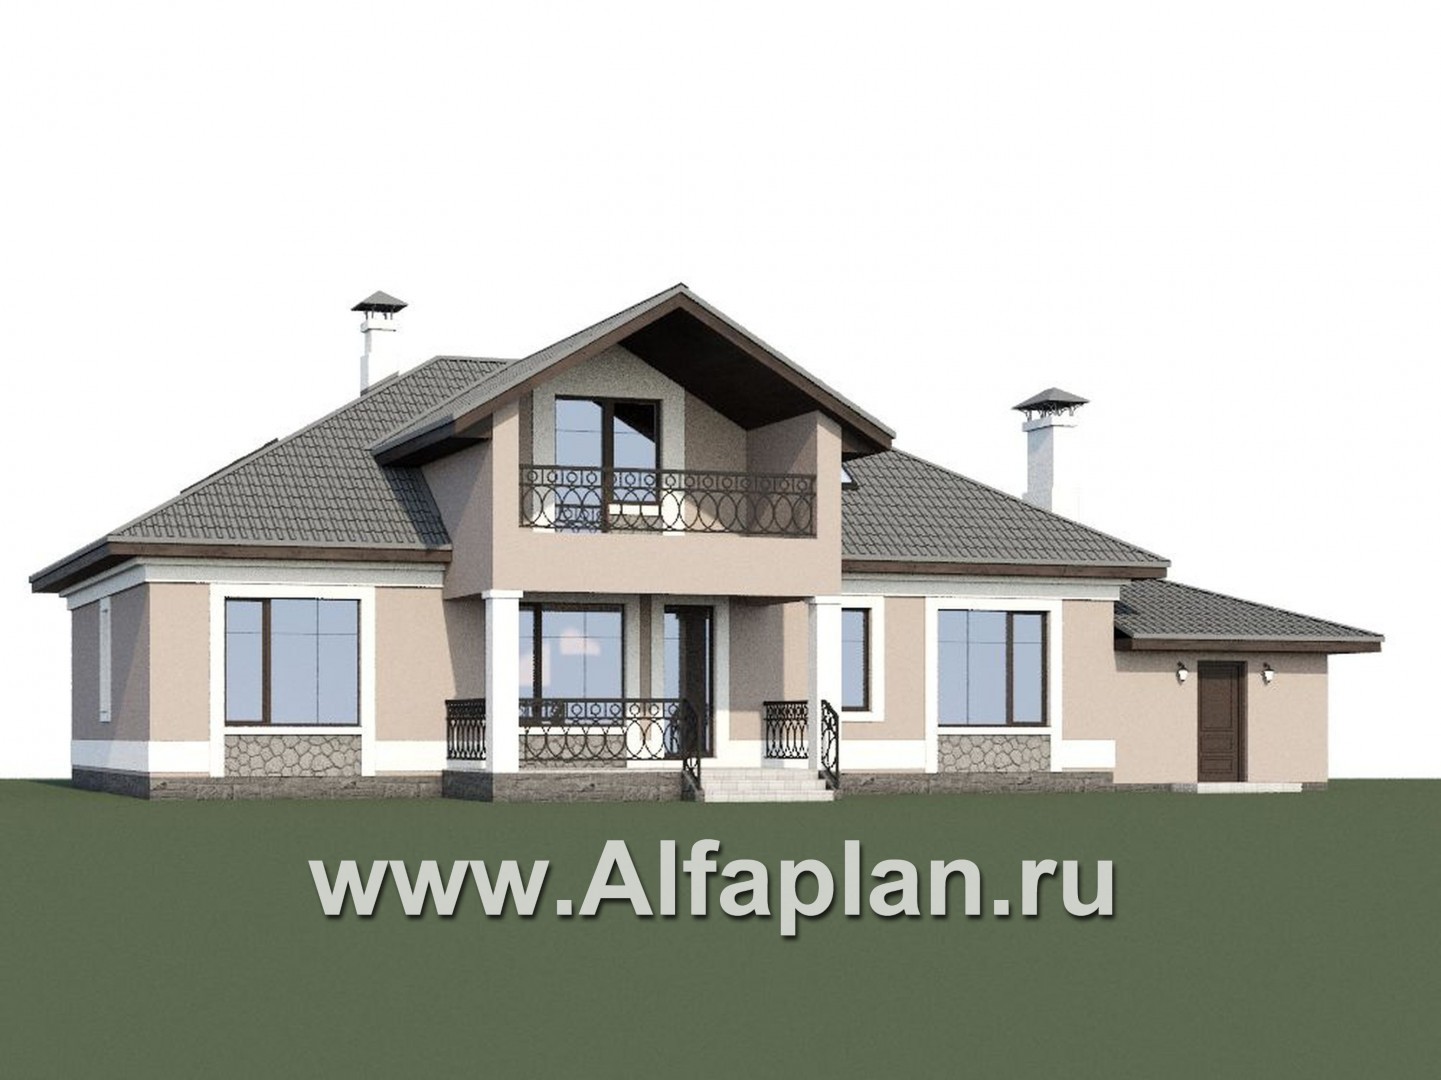 «Волга» - проект дома с мансардой, из газобетона, с террасой, планировка с тремя жилыми комнатами на 1 этаже и вторым светом  и гаражом, с гаражом - дизайн дома №1